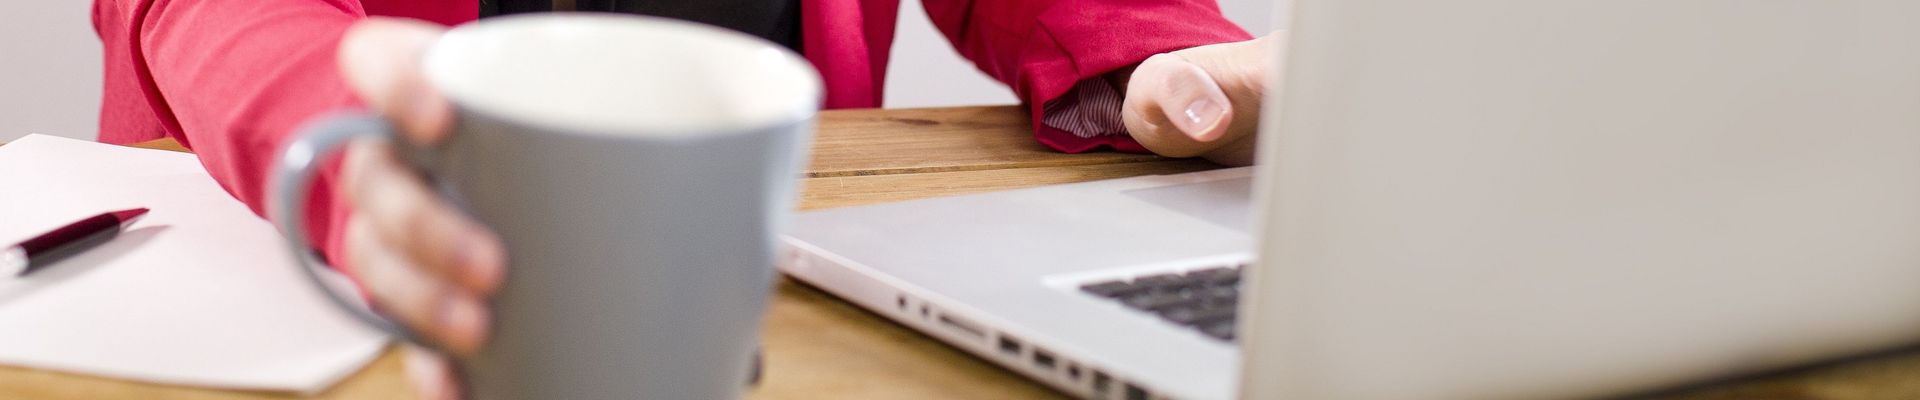 Eine Frau sitzt mit einem Kaffe am Schreibtisch und arbeitet an ihrem Laptop.